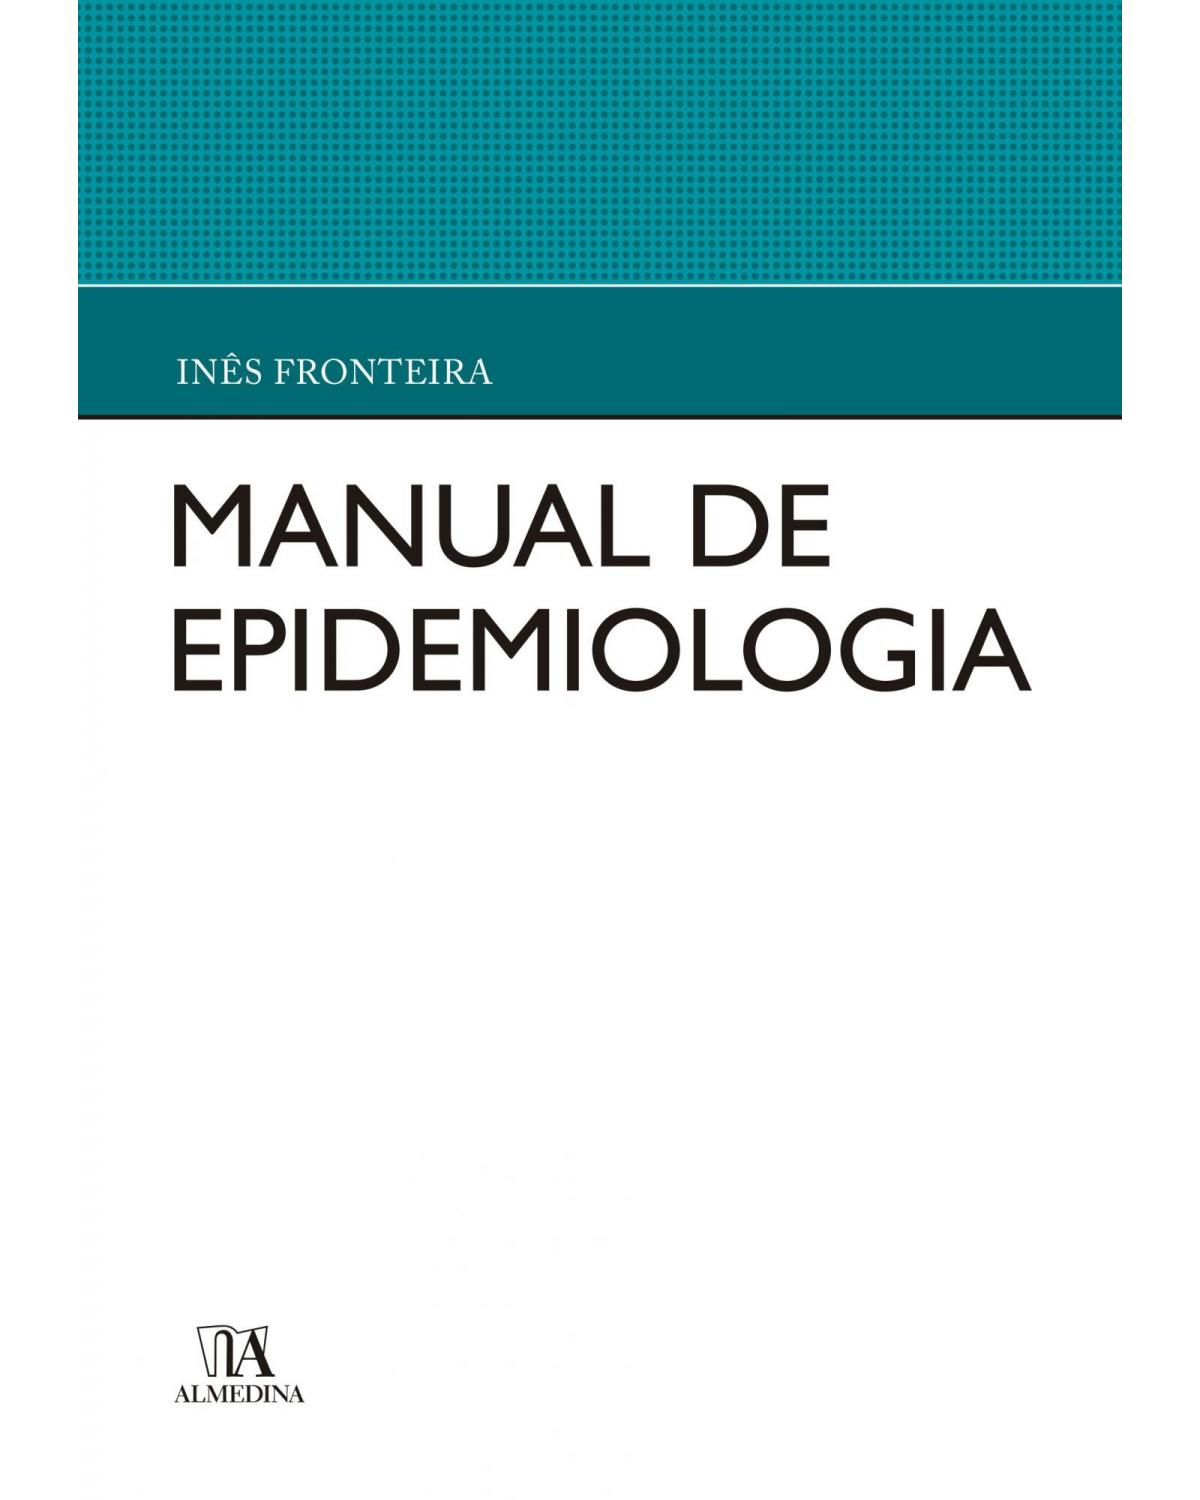 Manual de epidemiologia - 1ª Edição | 2018